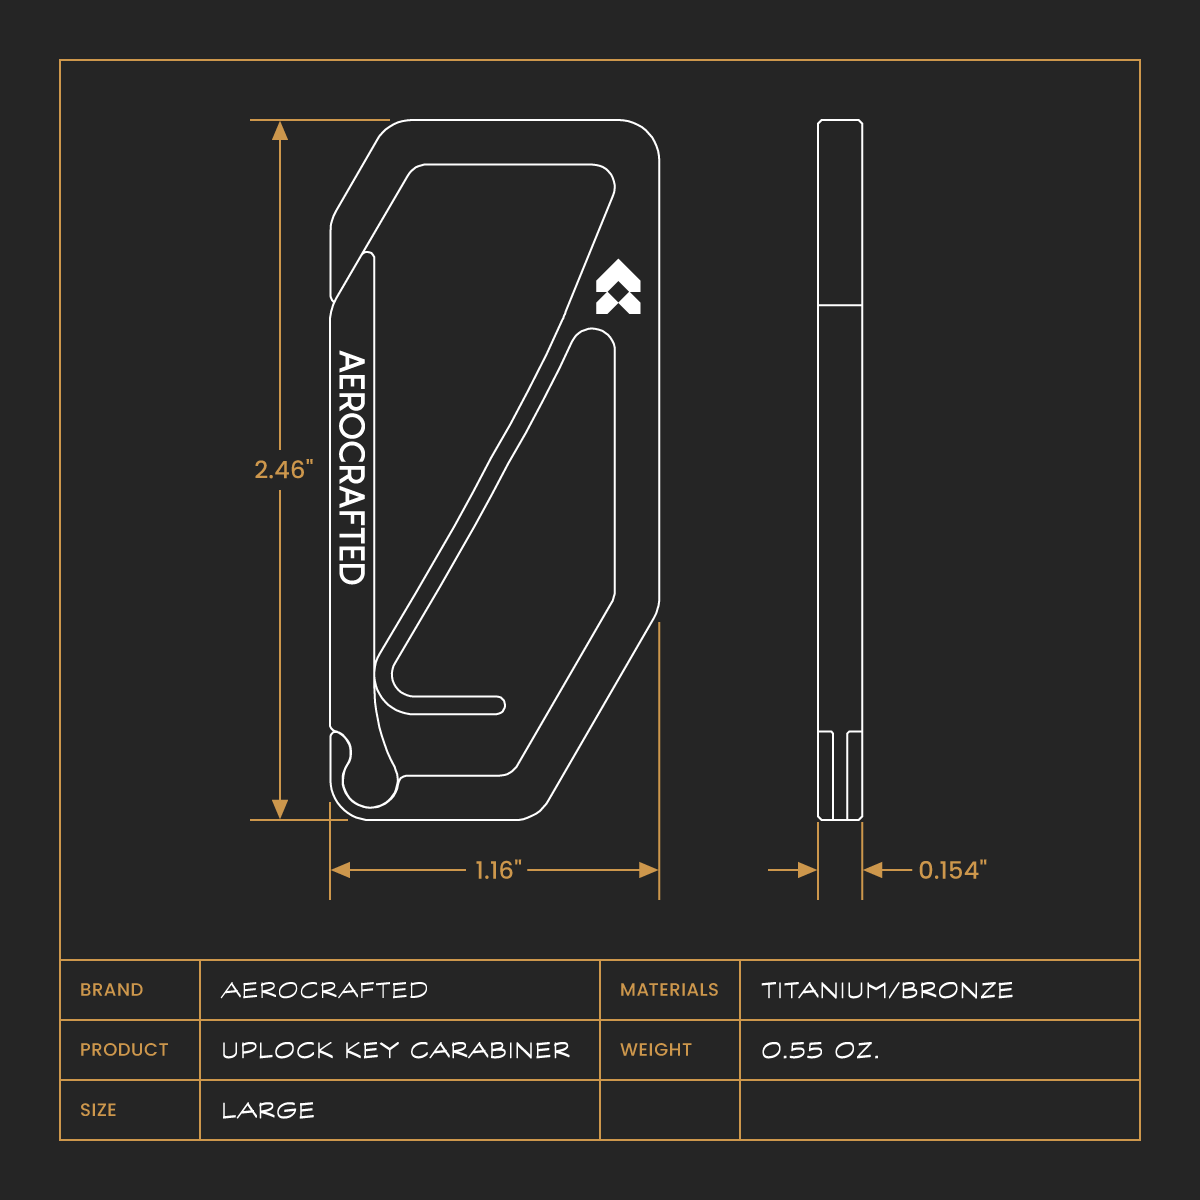 aerocrafted uplock key carabiner dimensions #material_titanium-bronze